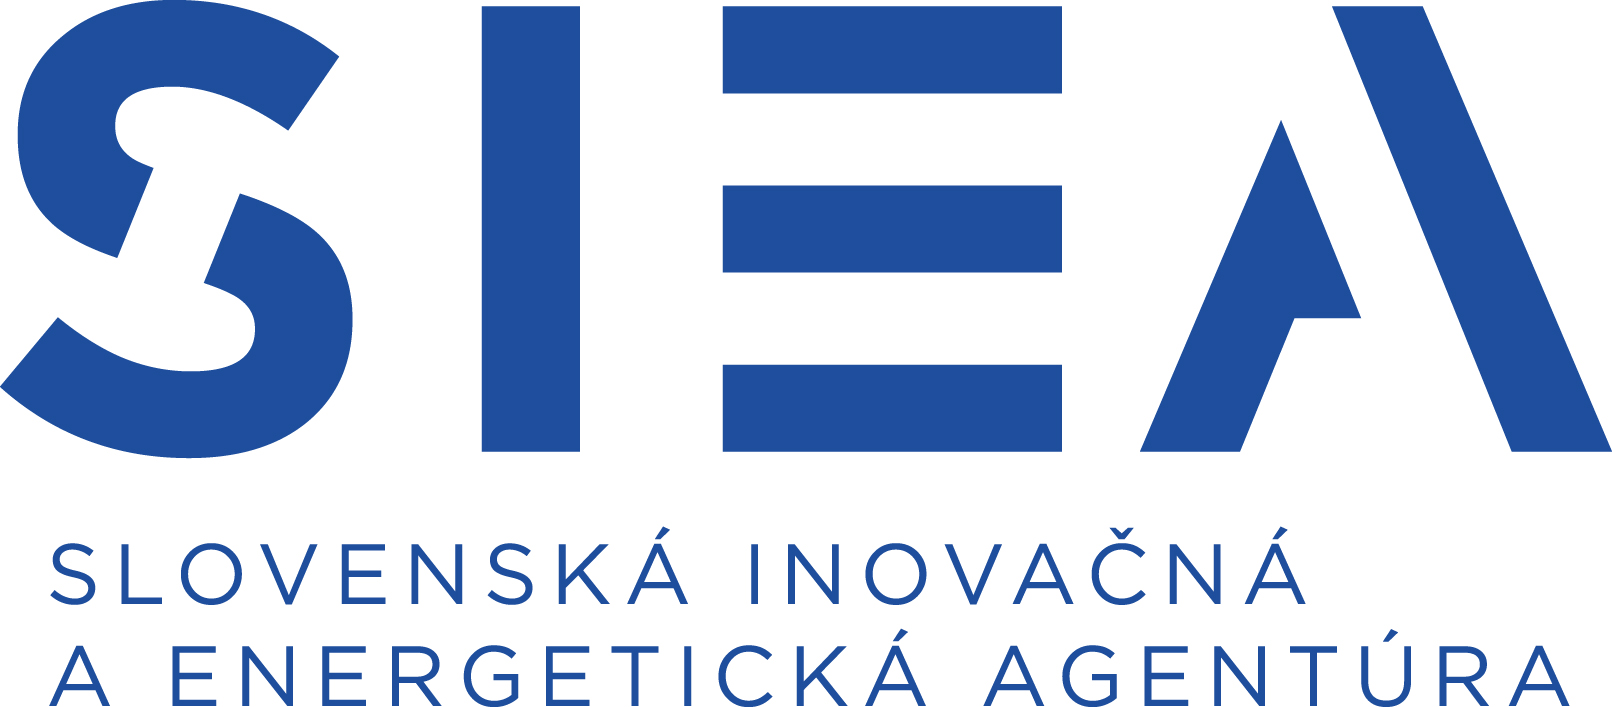 Slovenská inovačná a energetická agentúra